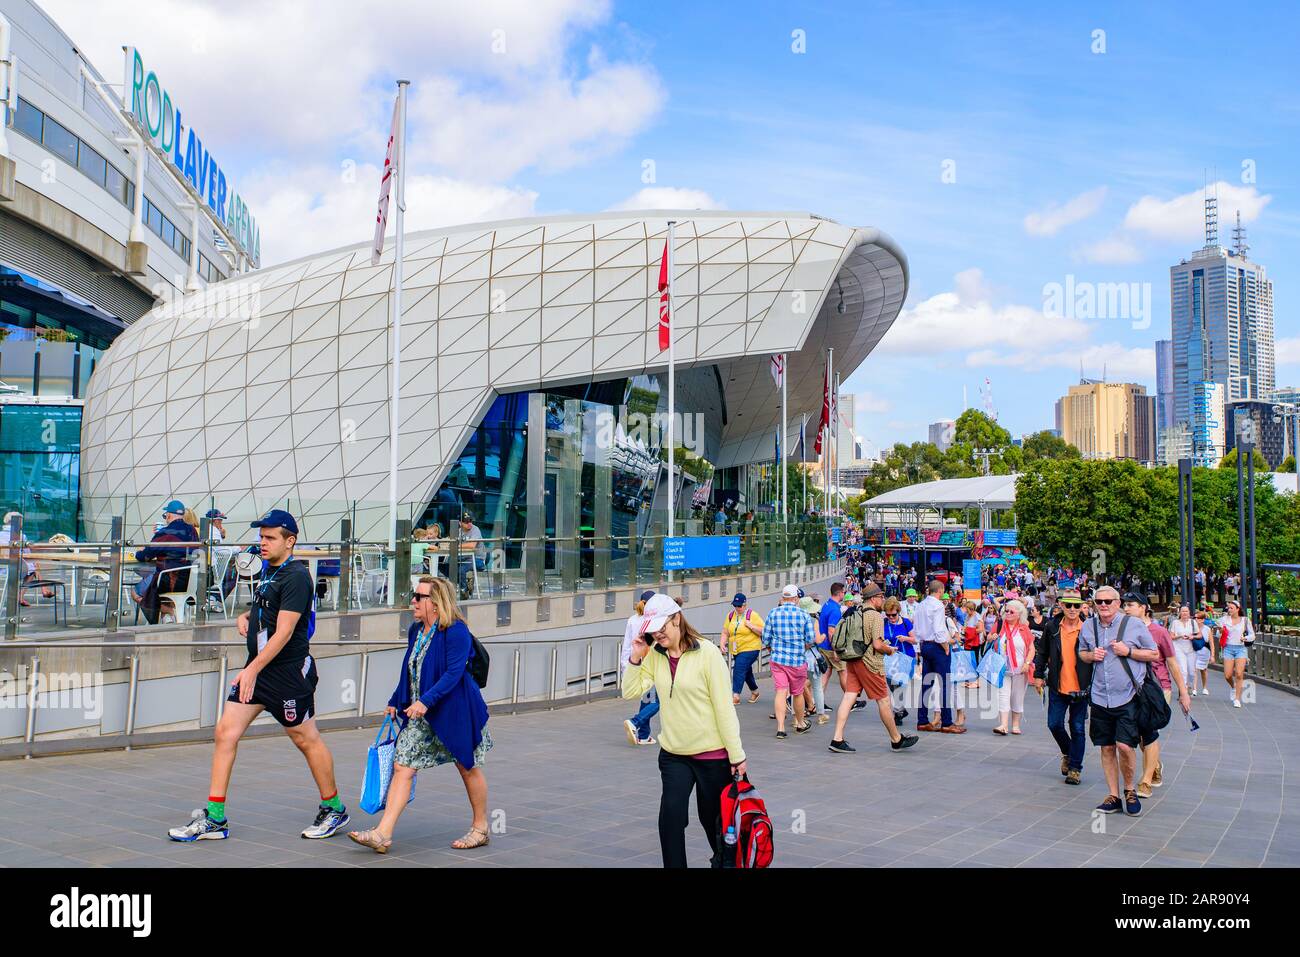 Rod Laver Arena for Australian Open 2020, eine Tennisanlage im Melbourne Park, Melbourne, Australien Stockfoto